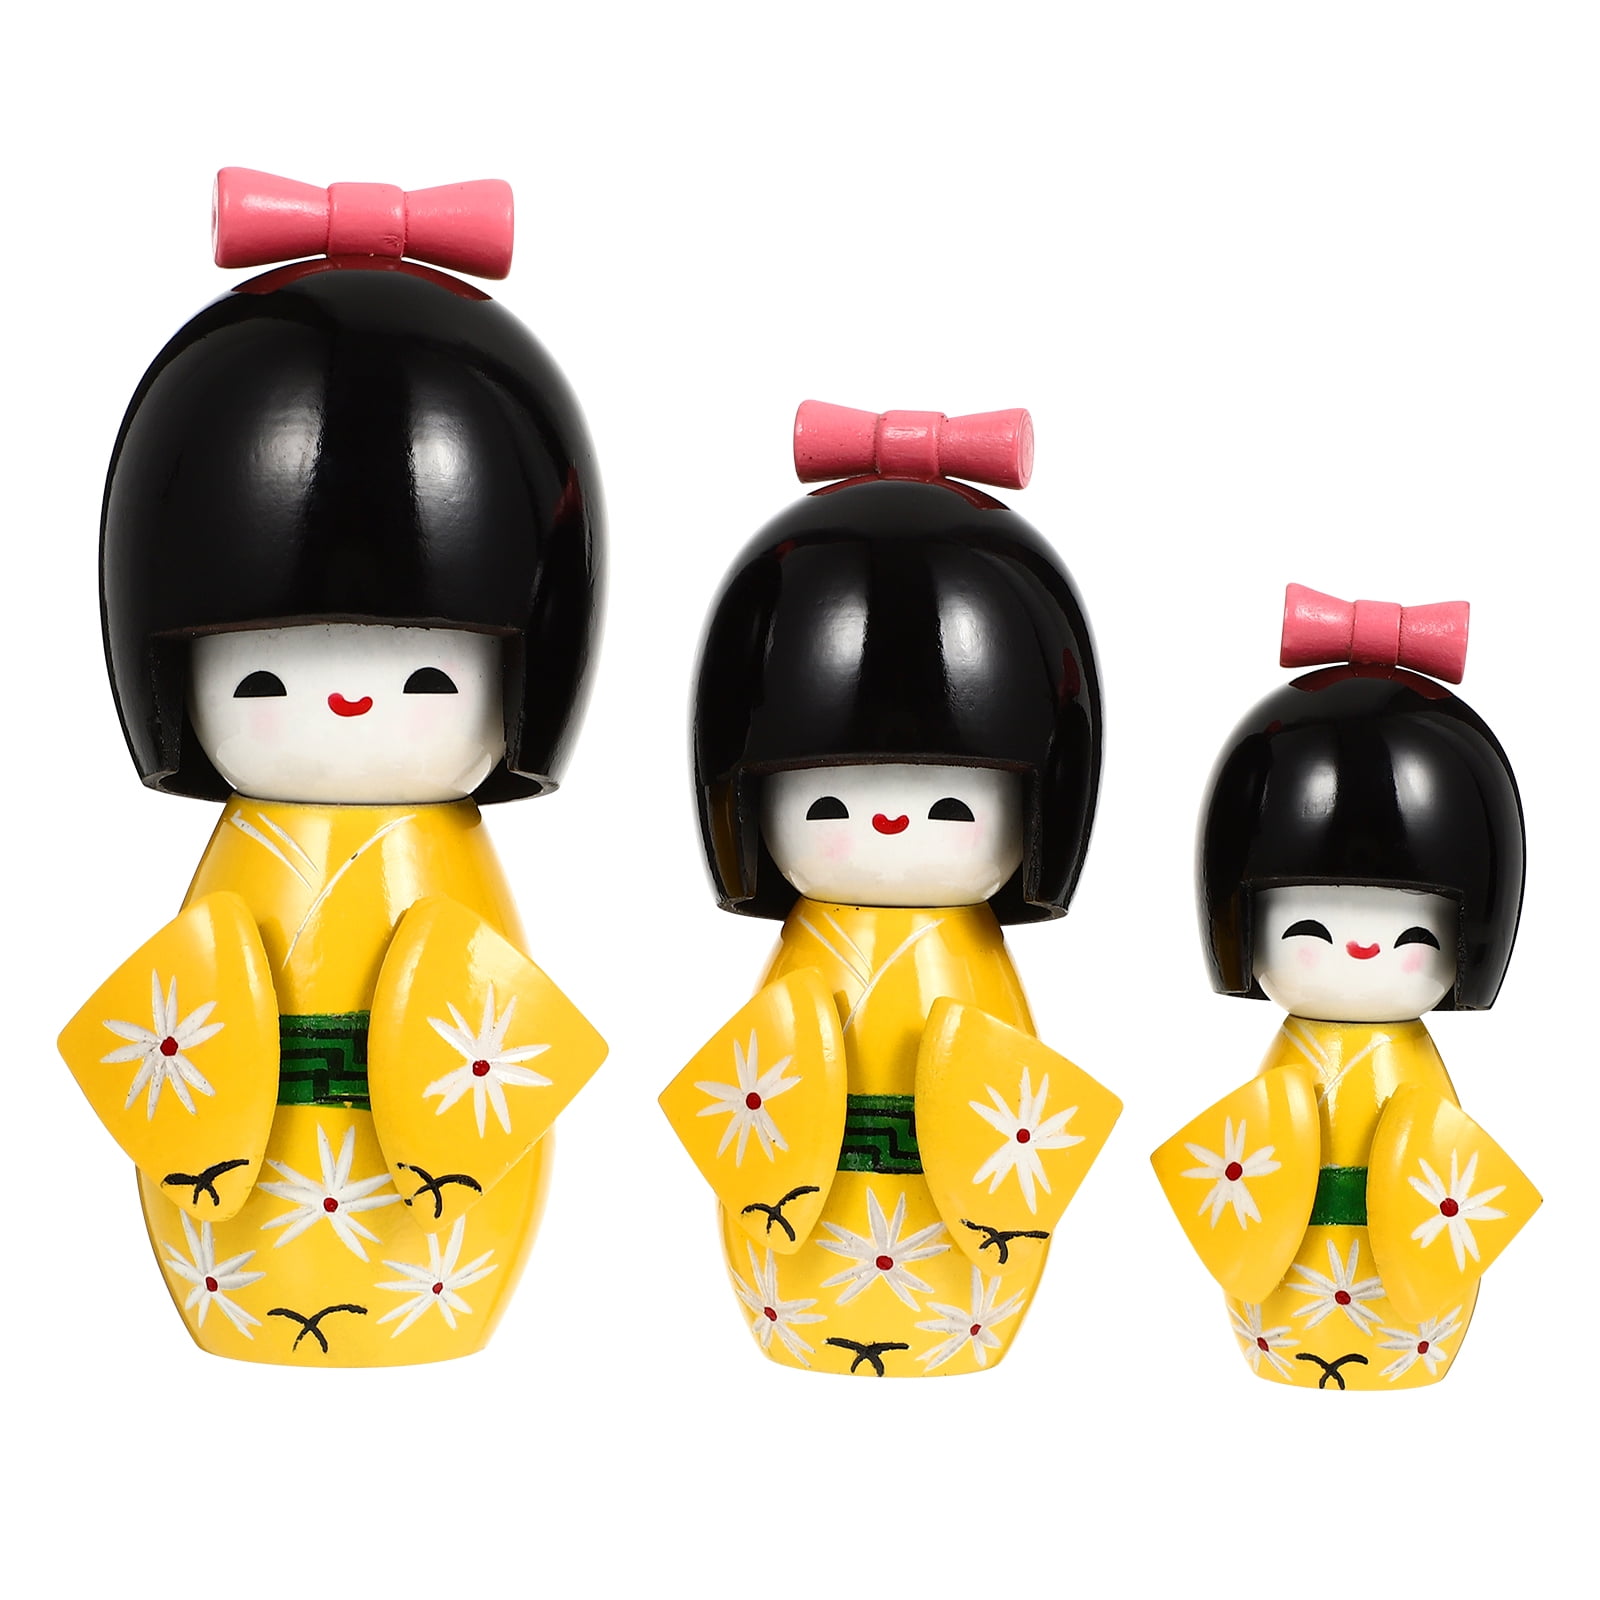  ORFOFE Japanese Doll Kids Cars Toy Porcelain Geisha Doll  Japanese Kimono Dolls Asian Kimono Figure Japanese Geisha Figurines Vintage Toys  Japanese Style Doll Souvenir Girl Wood maiko : Toys & Games